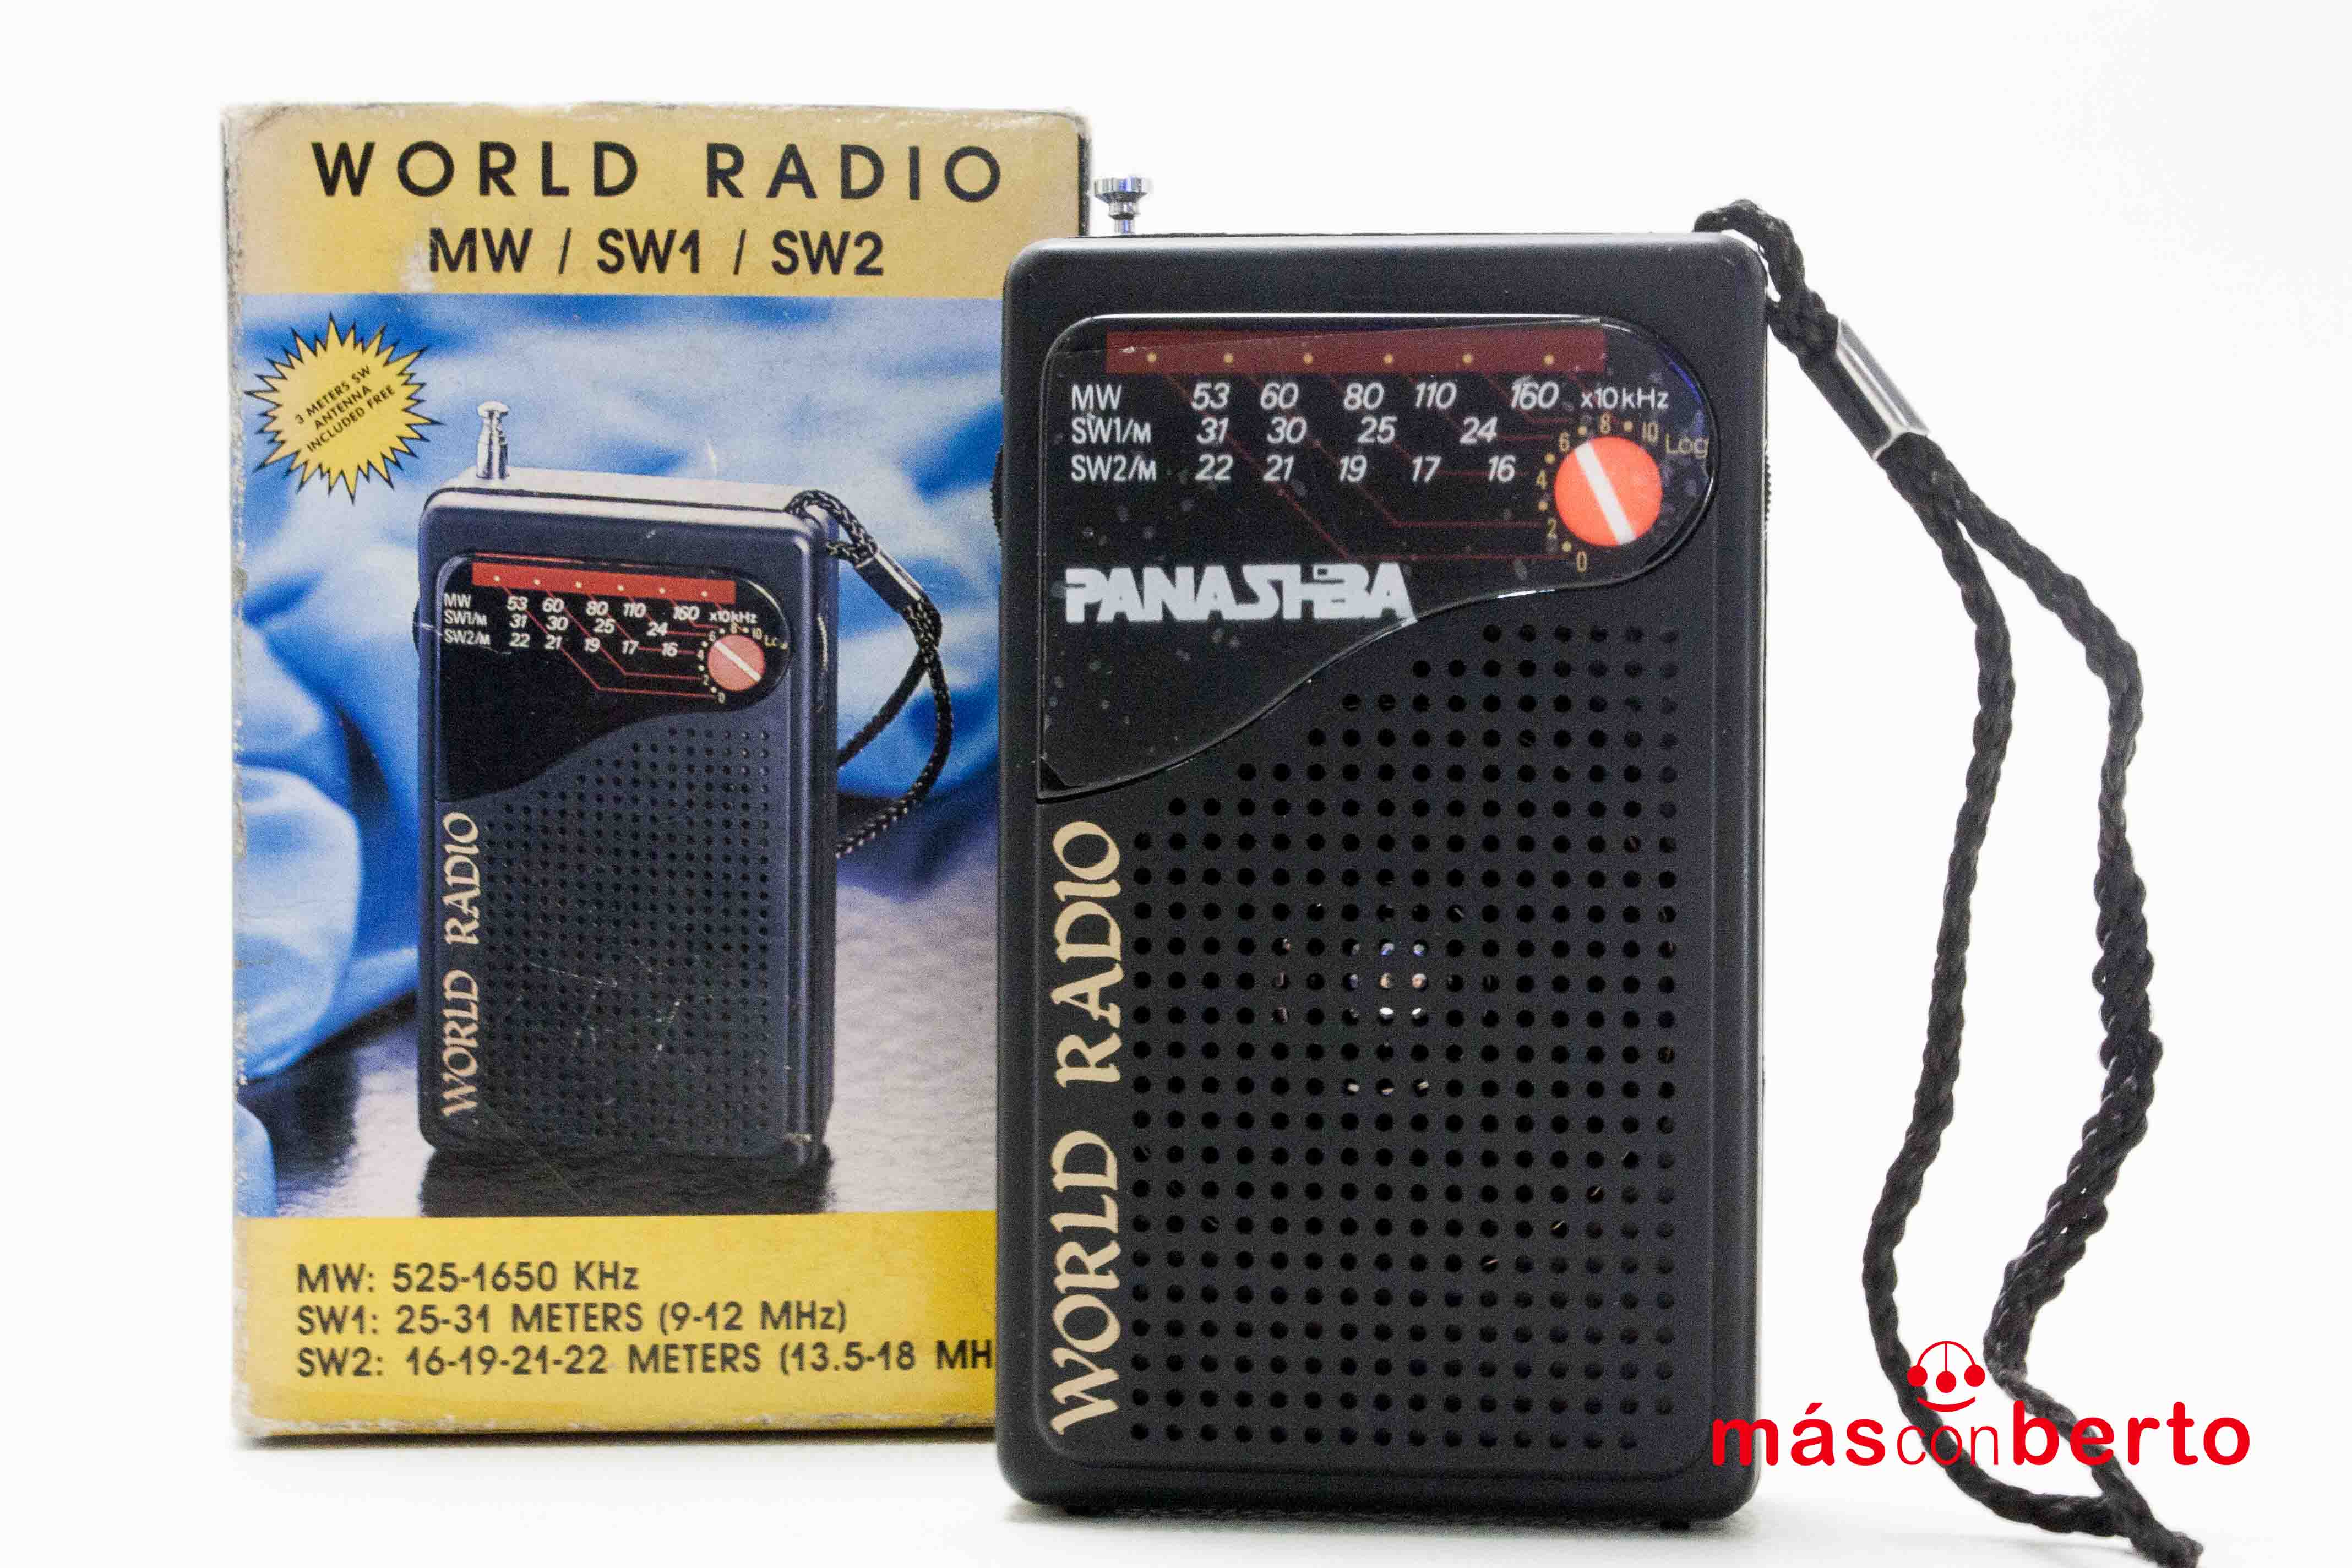 Radio MW/SW1/SW2 World Radio